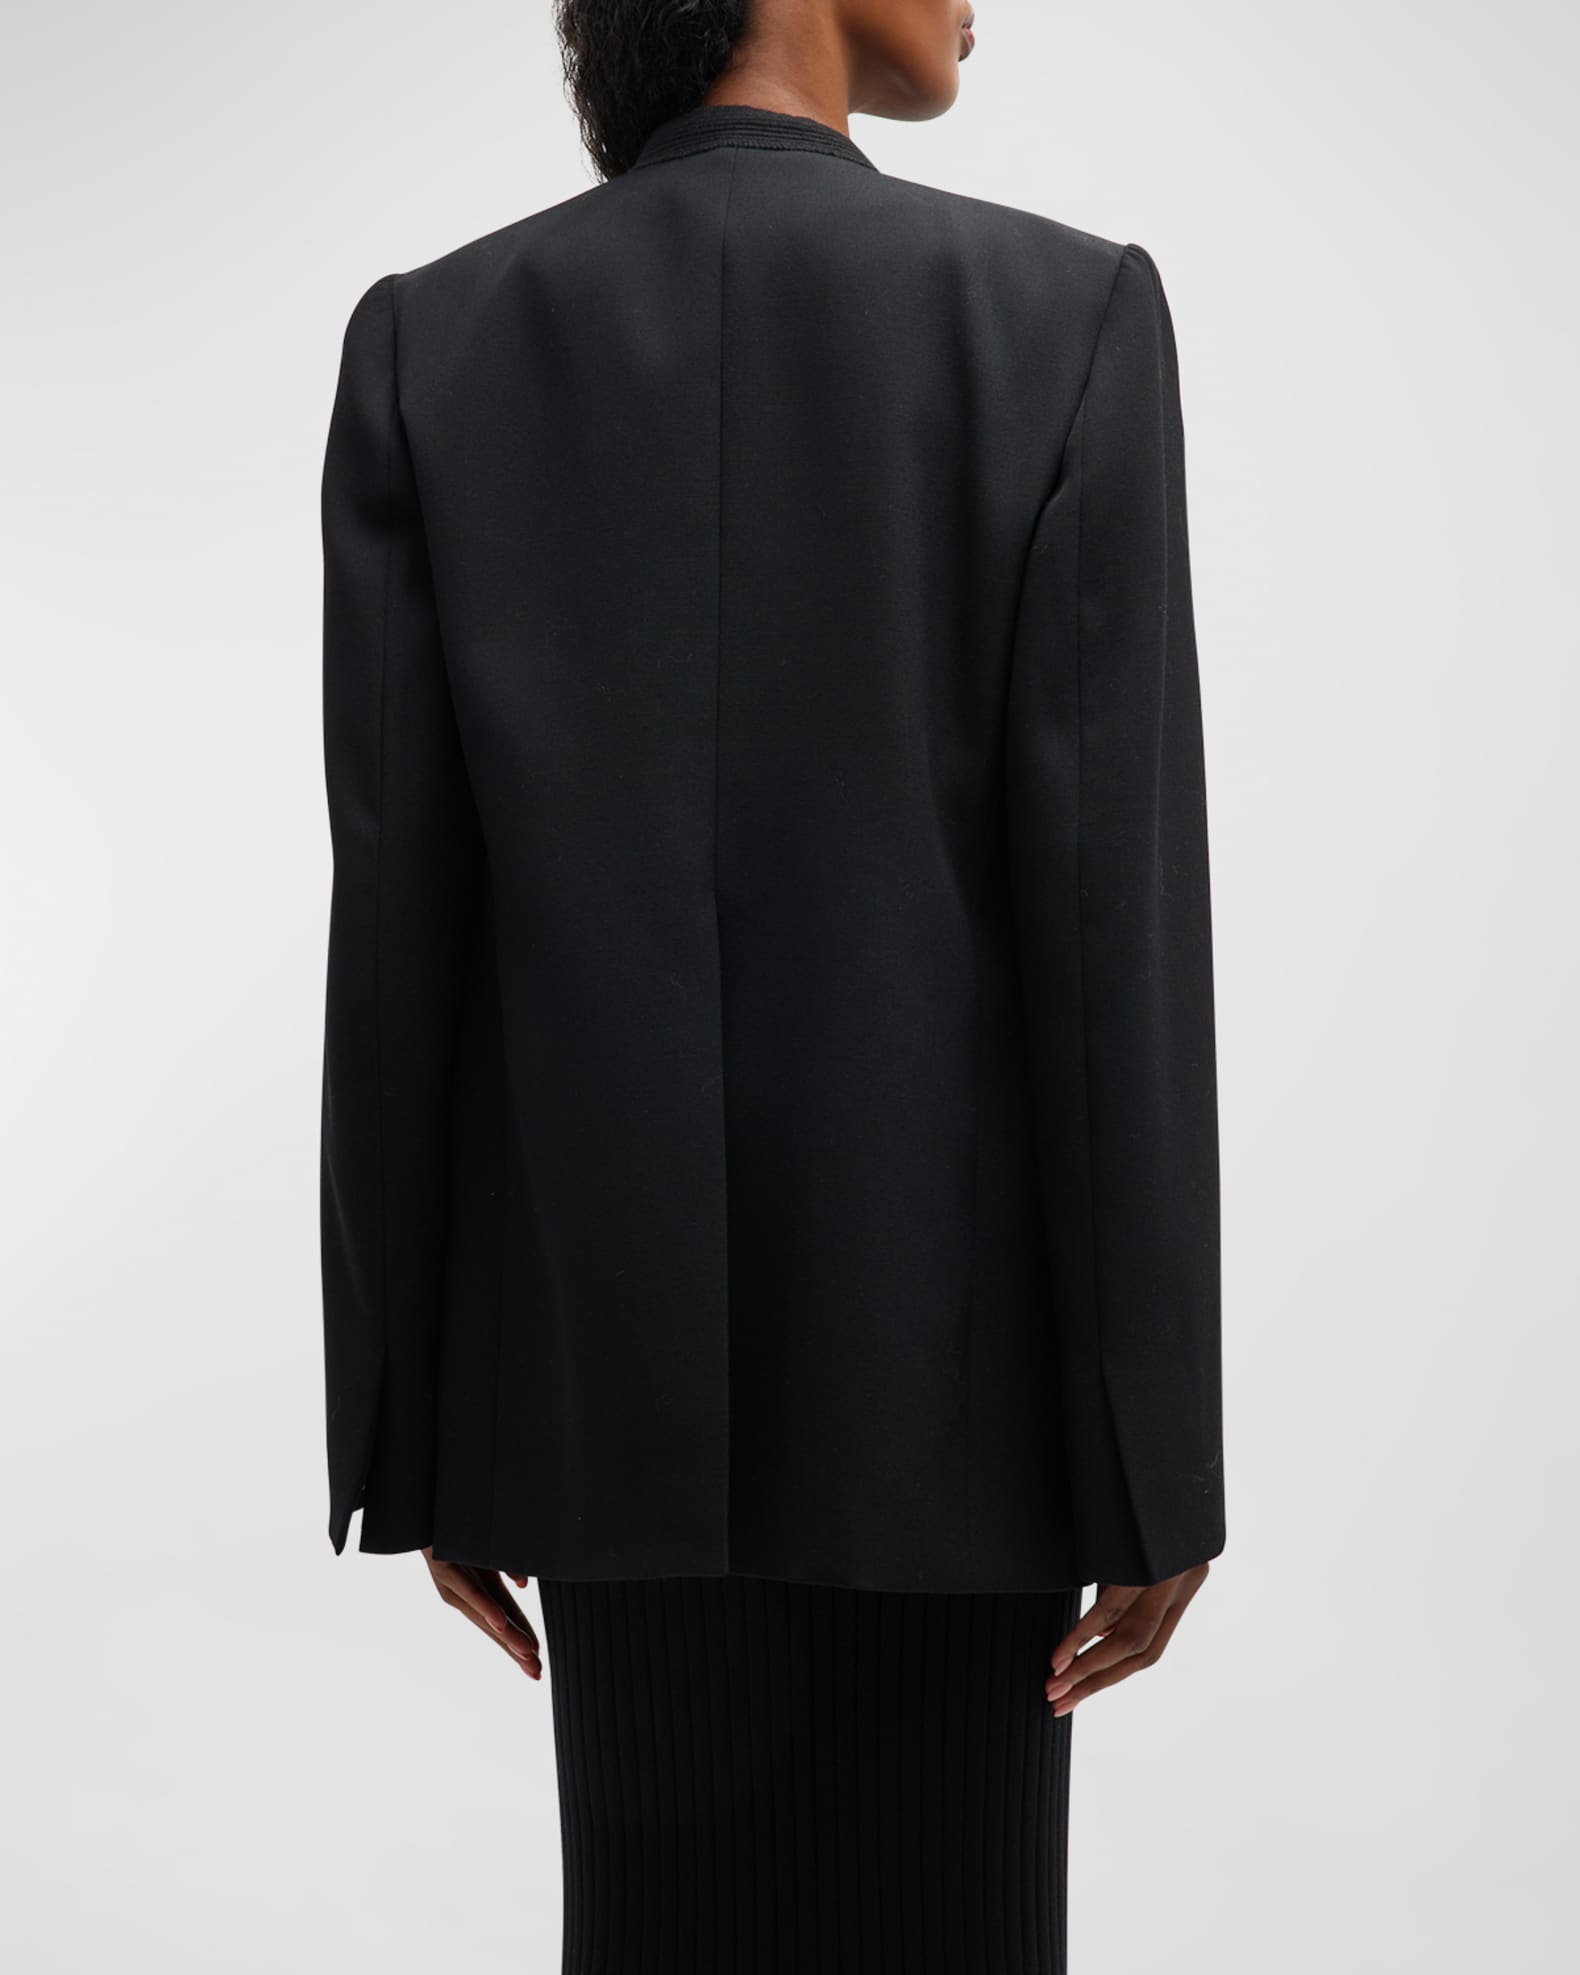 Louis Vuitton 2006 Cashmere Evening Jacket